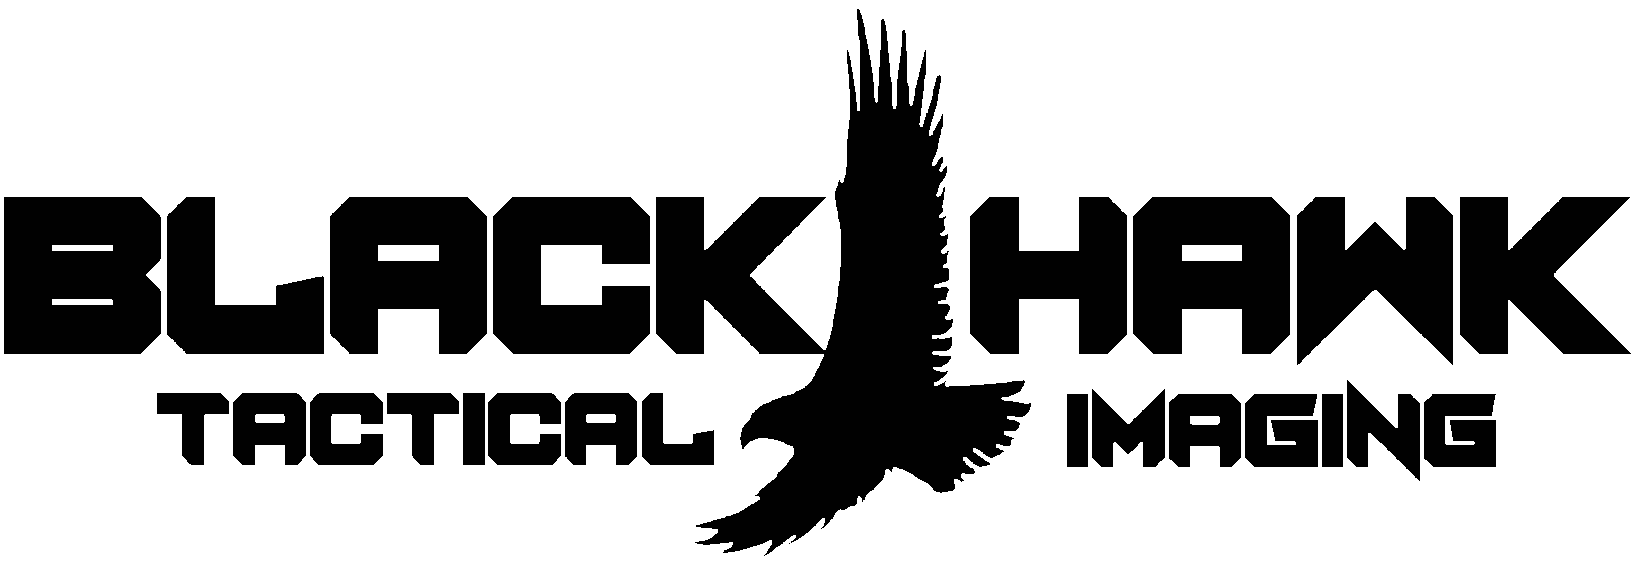 BlackHawk Tactical Imaging